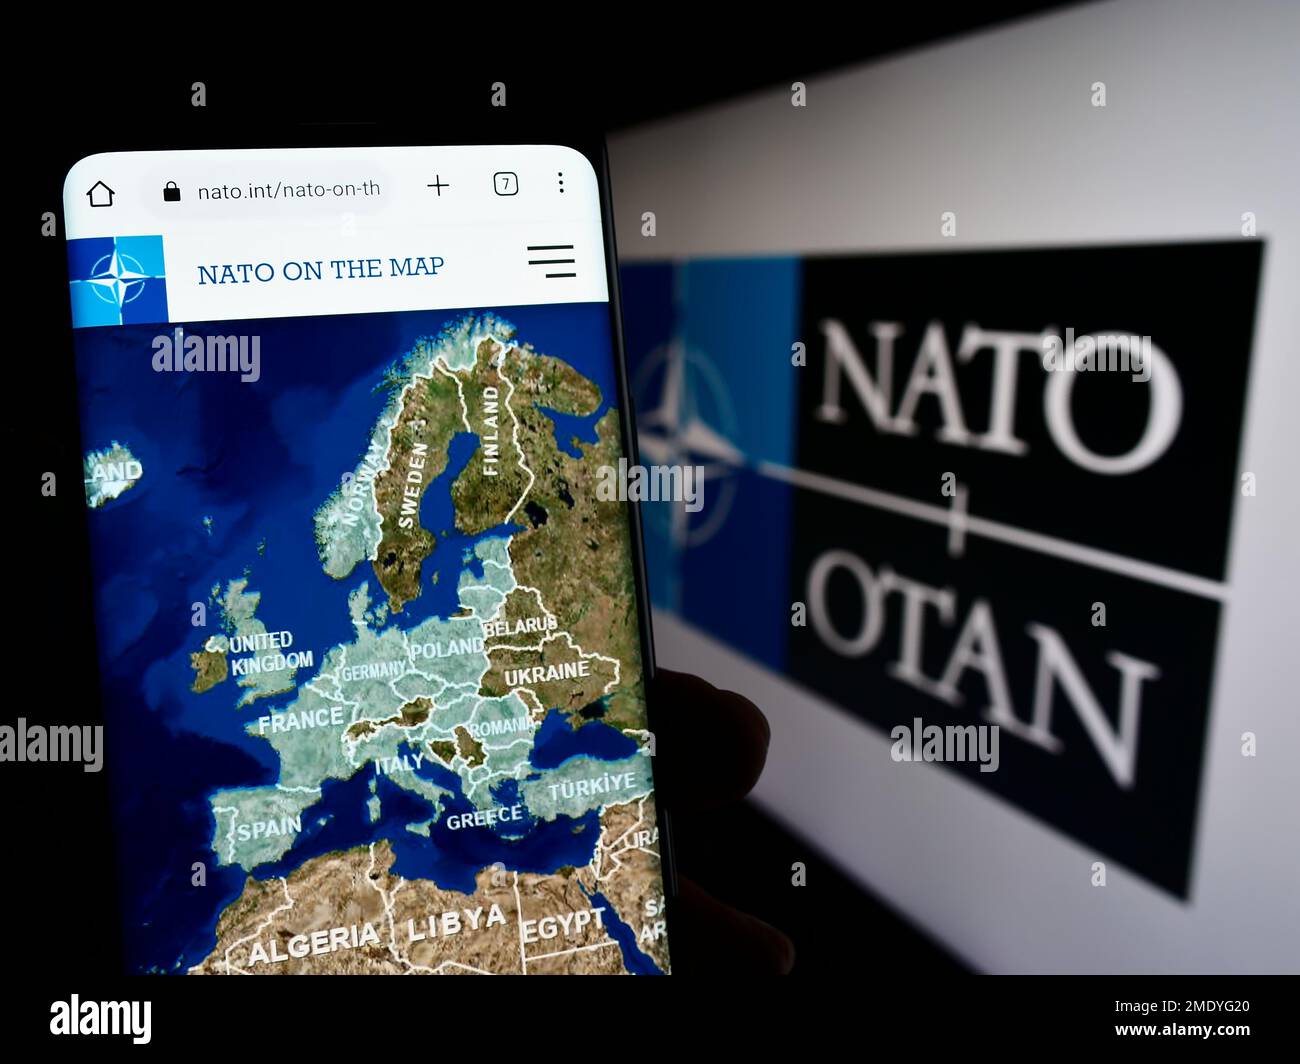 Persona che tiene uno smartphone con il sito Web della NATO (North Atlantic Treaty Organization) sullo schermo davanti al logo. Messa a fuoco al centro del display del telefono. Foto Stock